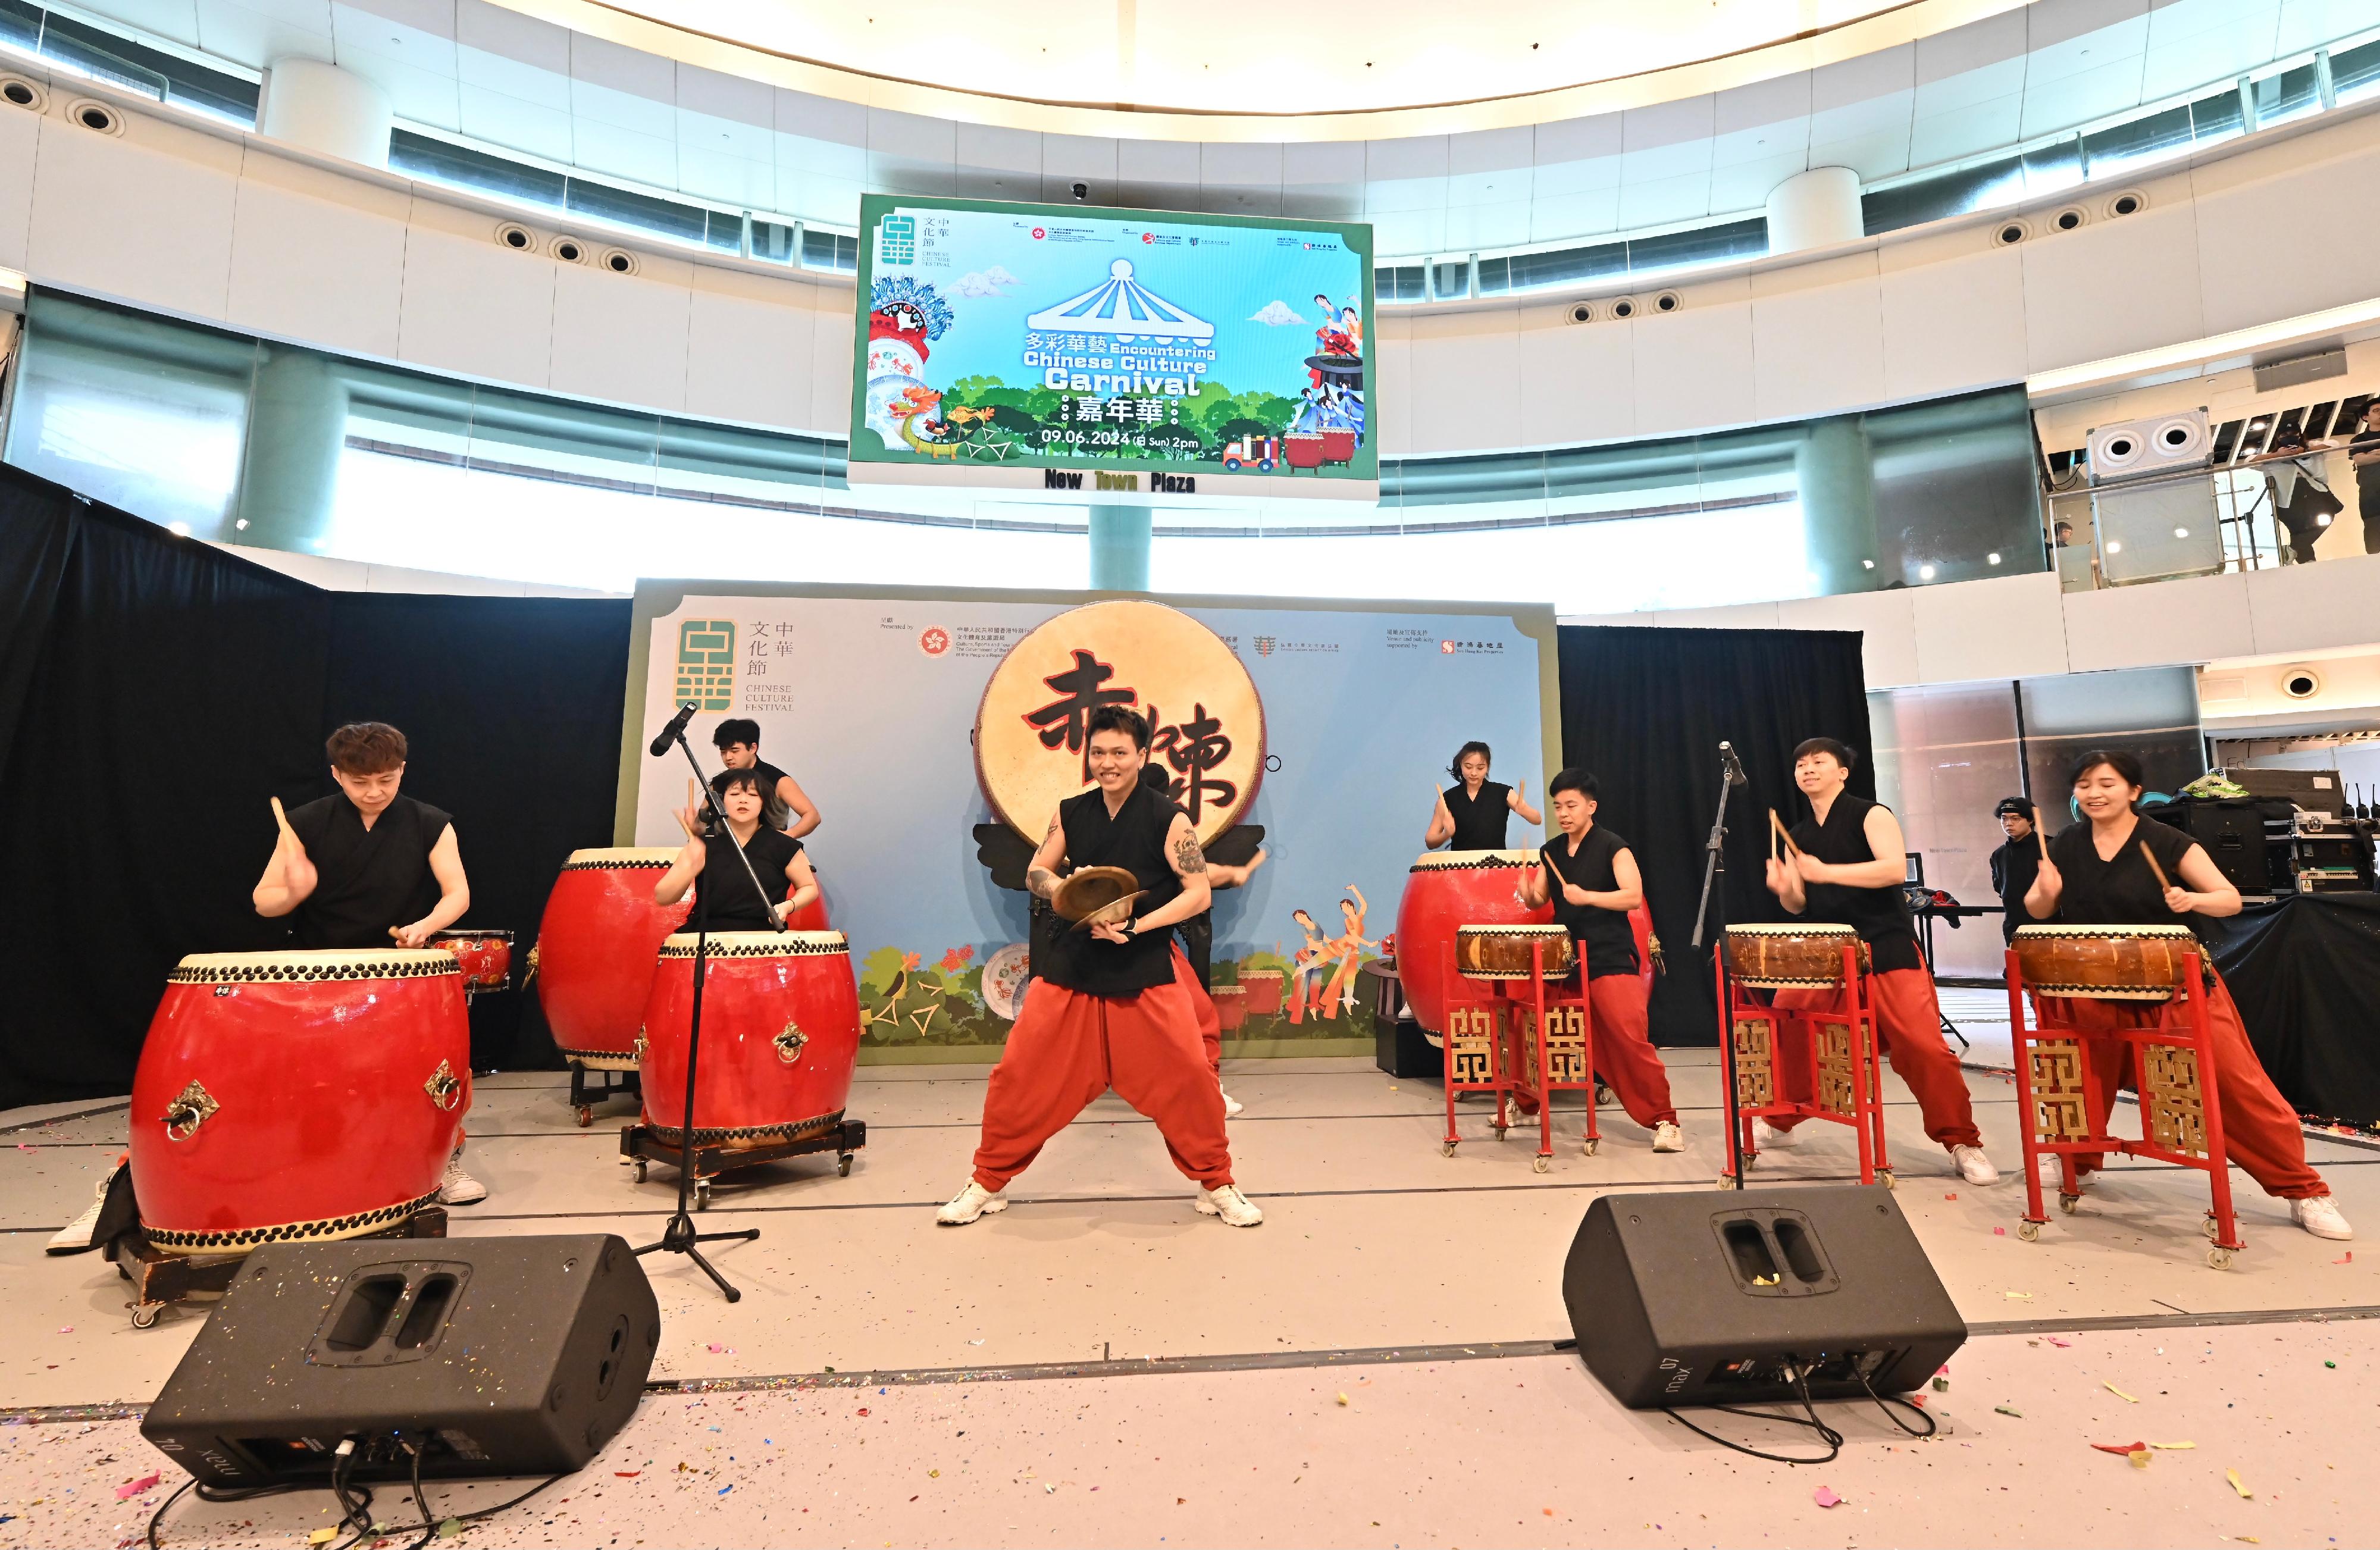 首届「中华文化节」今日（六月九日）下午在沙田举办《多彩华艺》嘉年华。图示现场舞台表演。